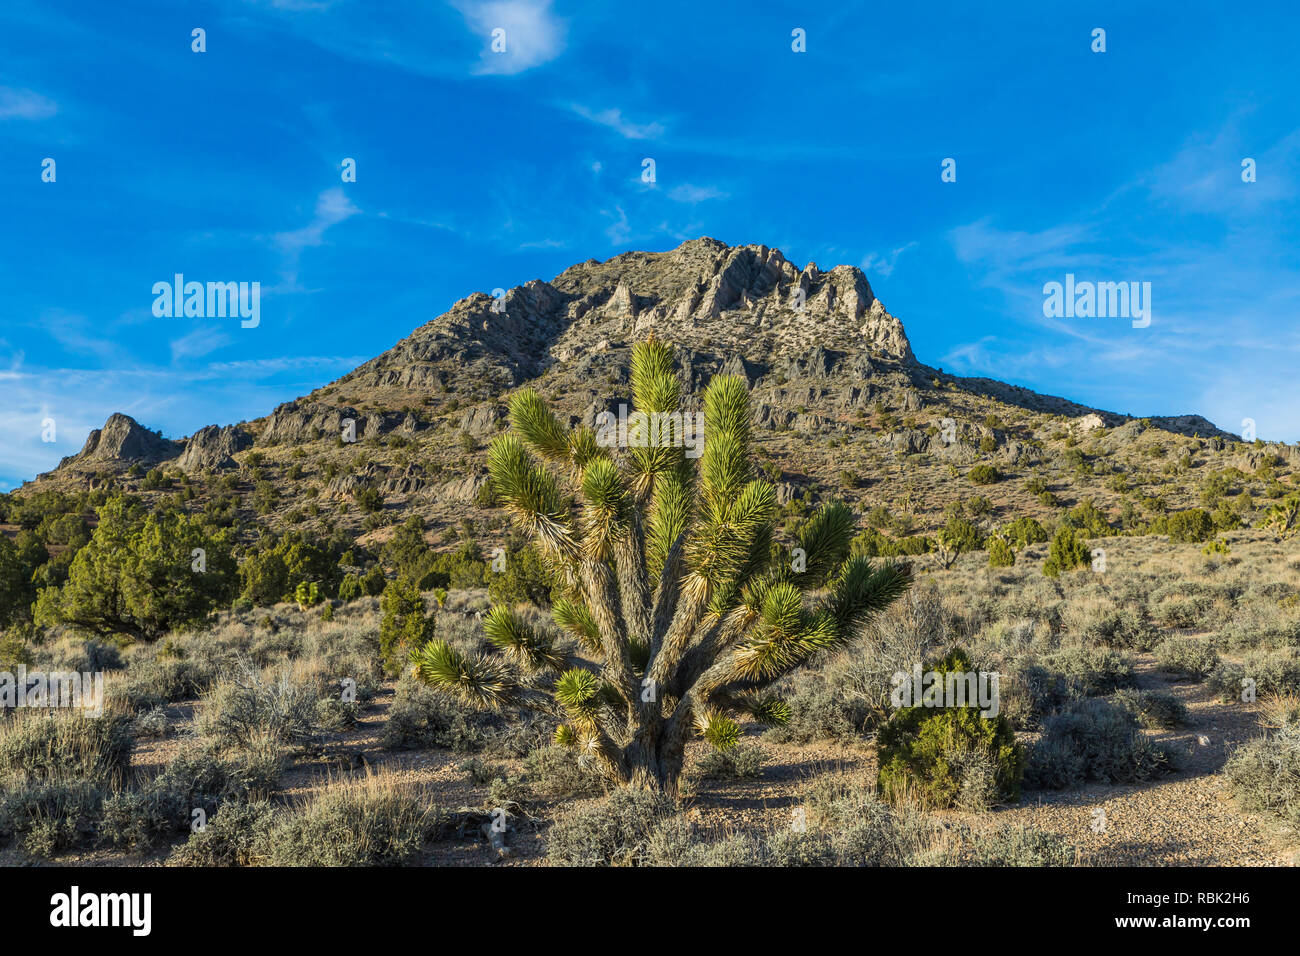 Joshua Tree, Yucca brevifolia, à l'Oak Springs zone de collecte de fossiles de trilobites du sommet, sur les terres BLM le long de la route 93 au Nevada, USA Banque D'Images